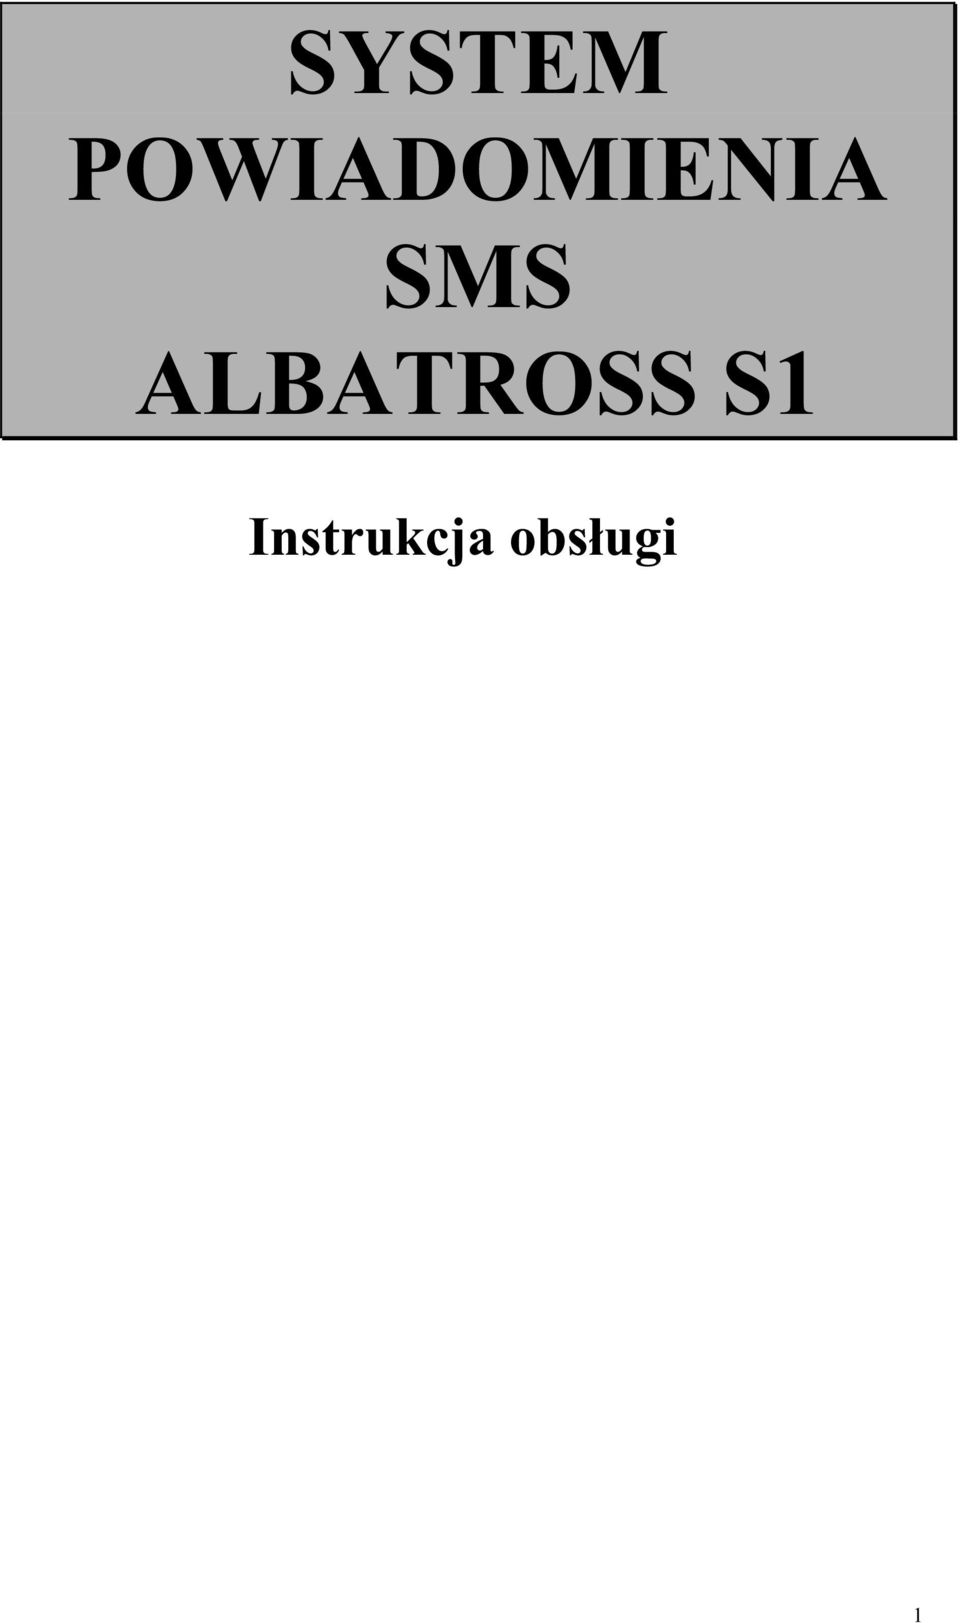 SMS ALBATROSS